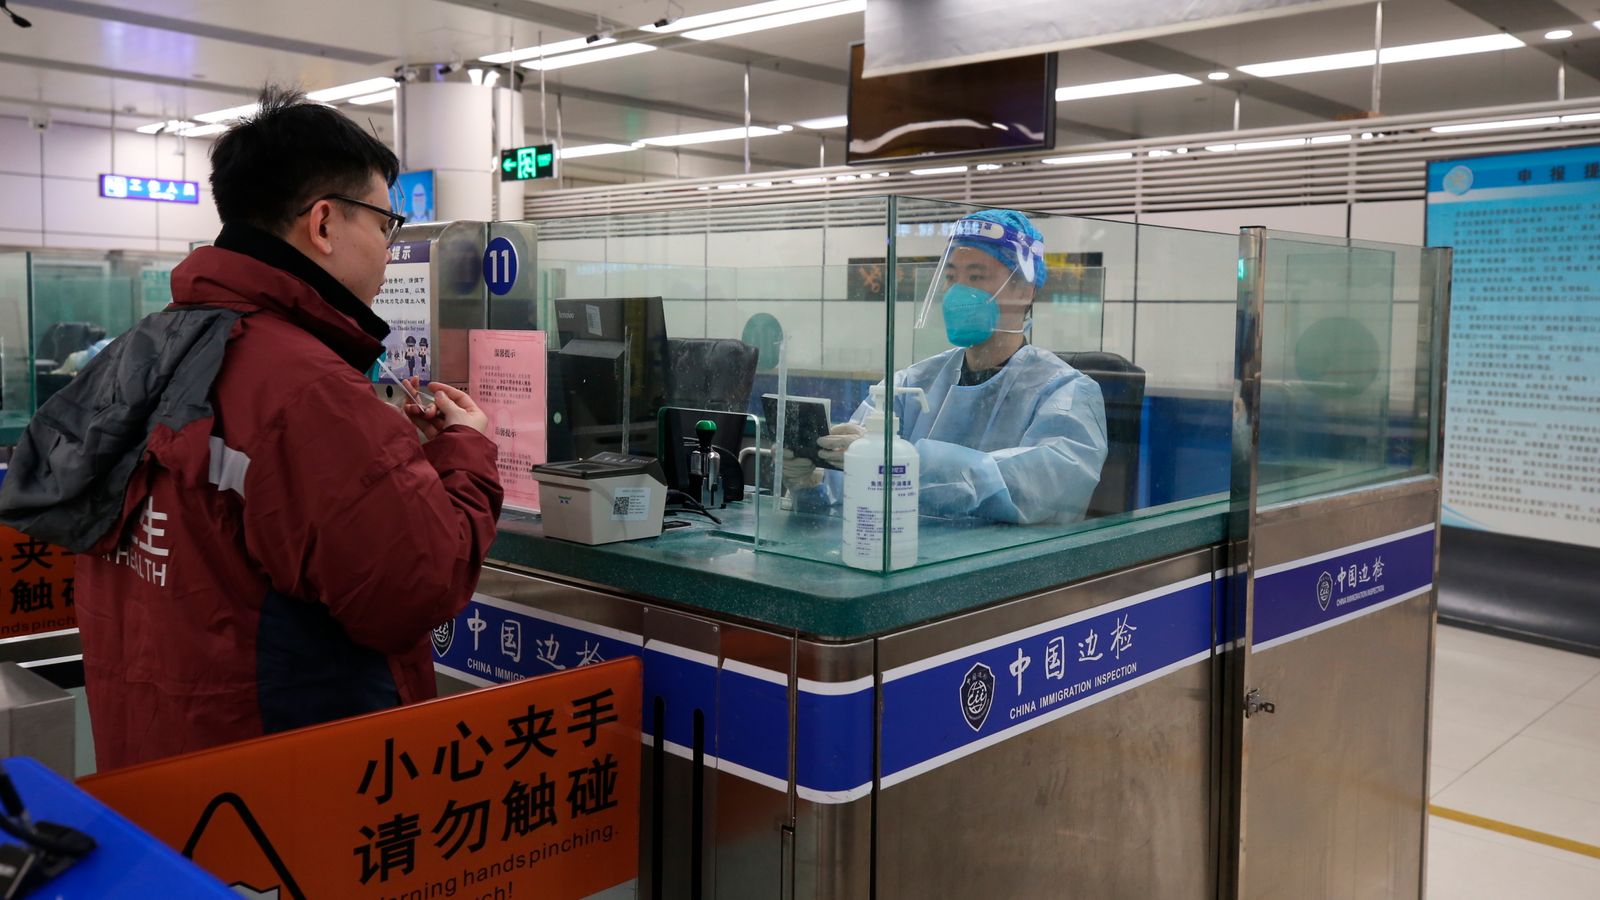 Govt-19: اندلاع فيروس كورونا في هونج كونج يدفع مدينة شنتشن الصينية المجاورة لحبسها |  اخبار العالم